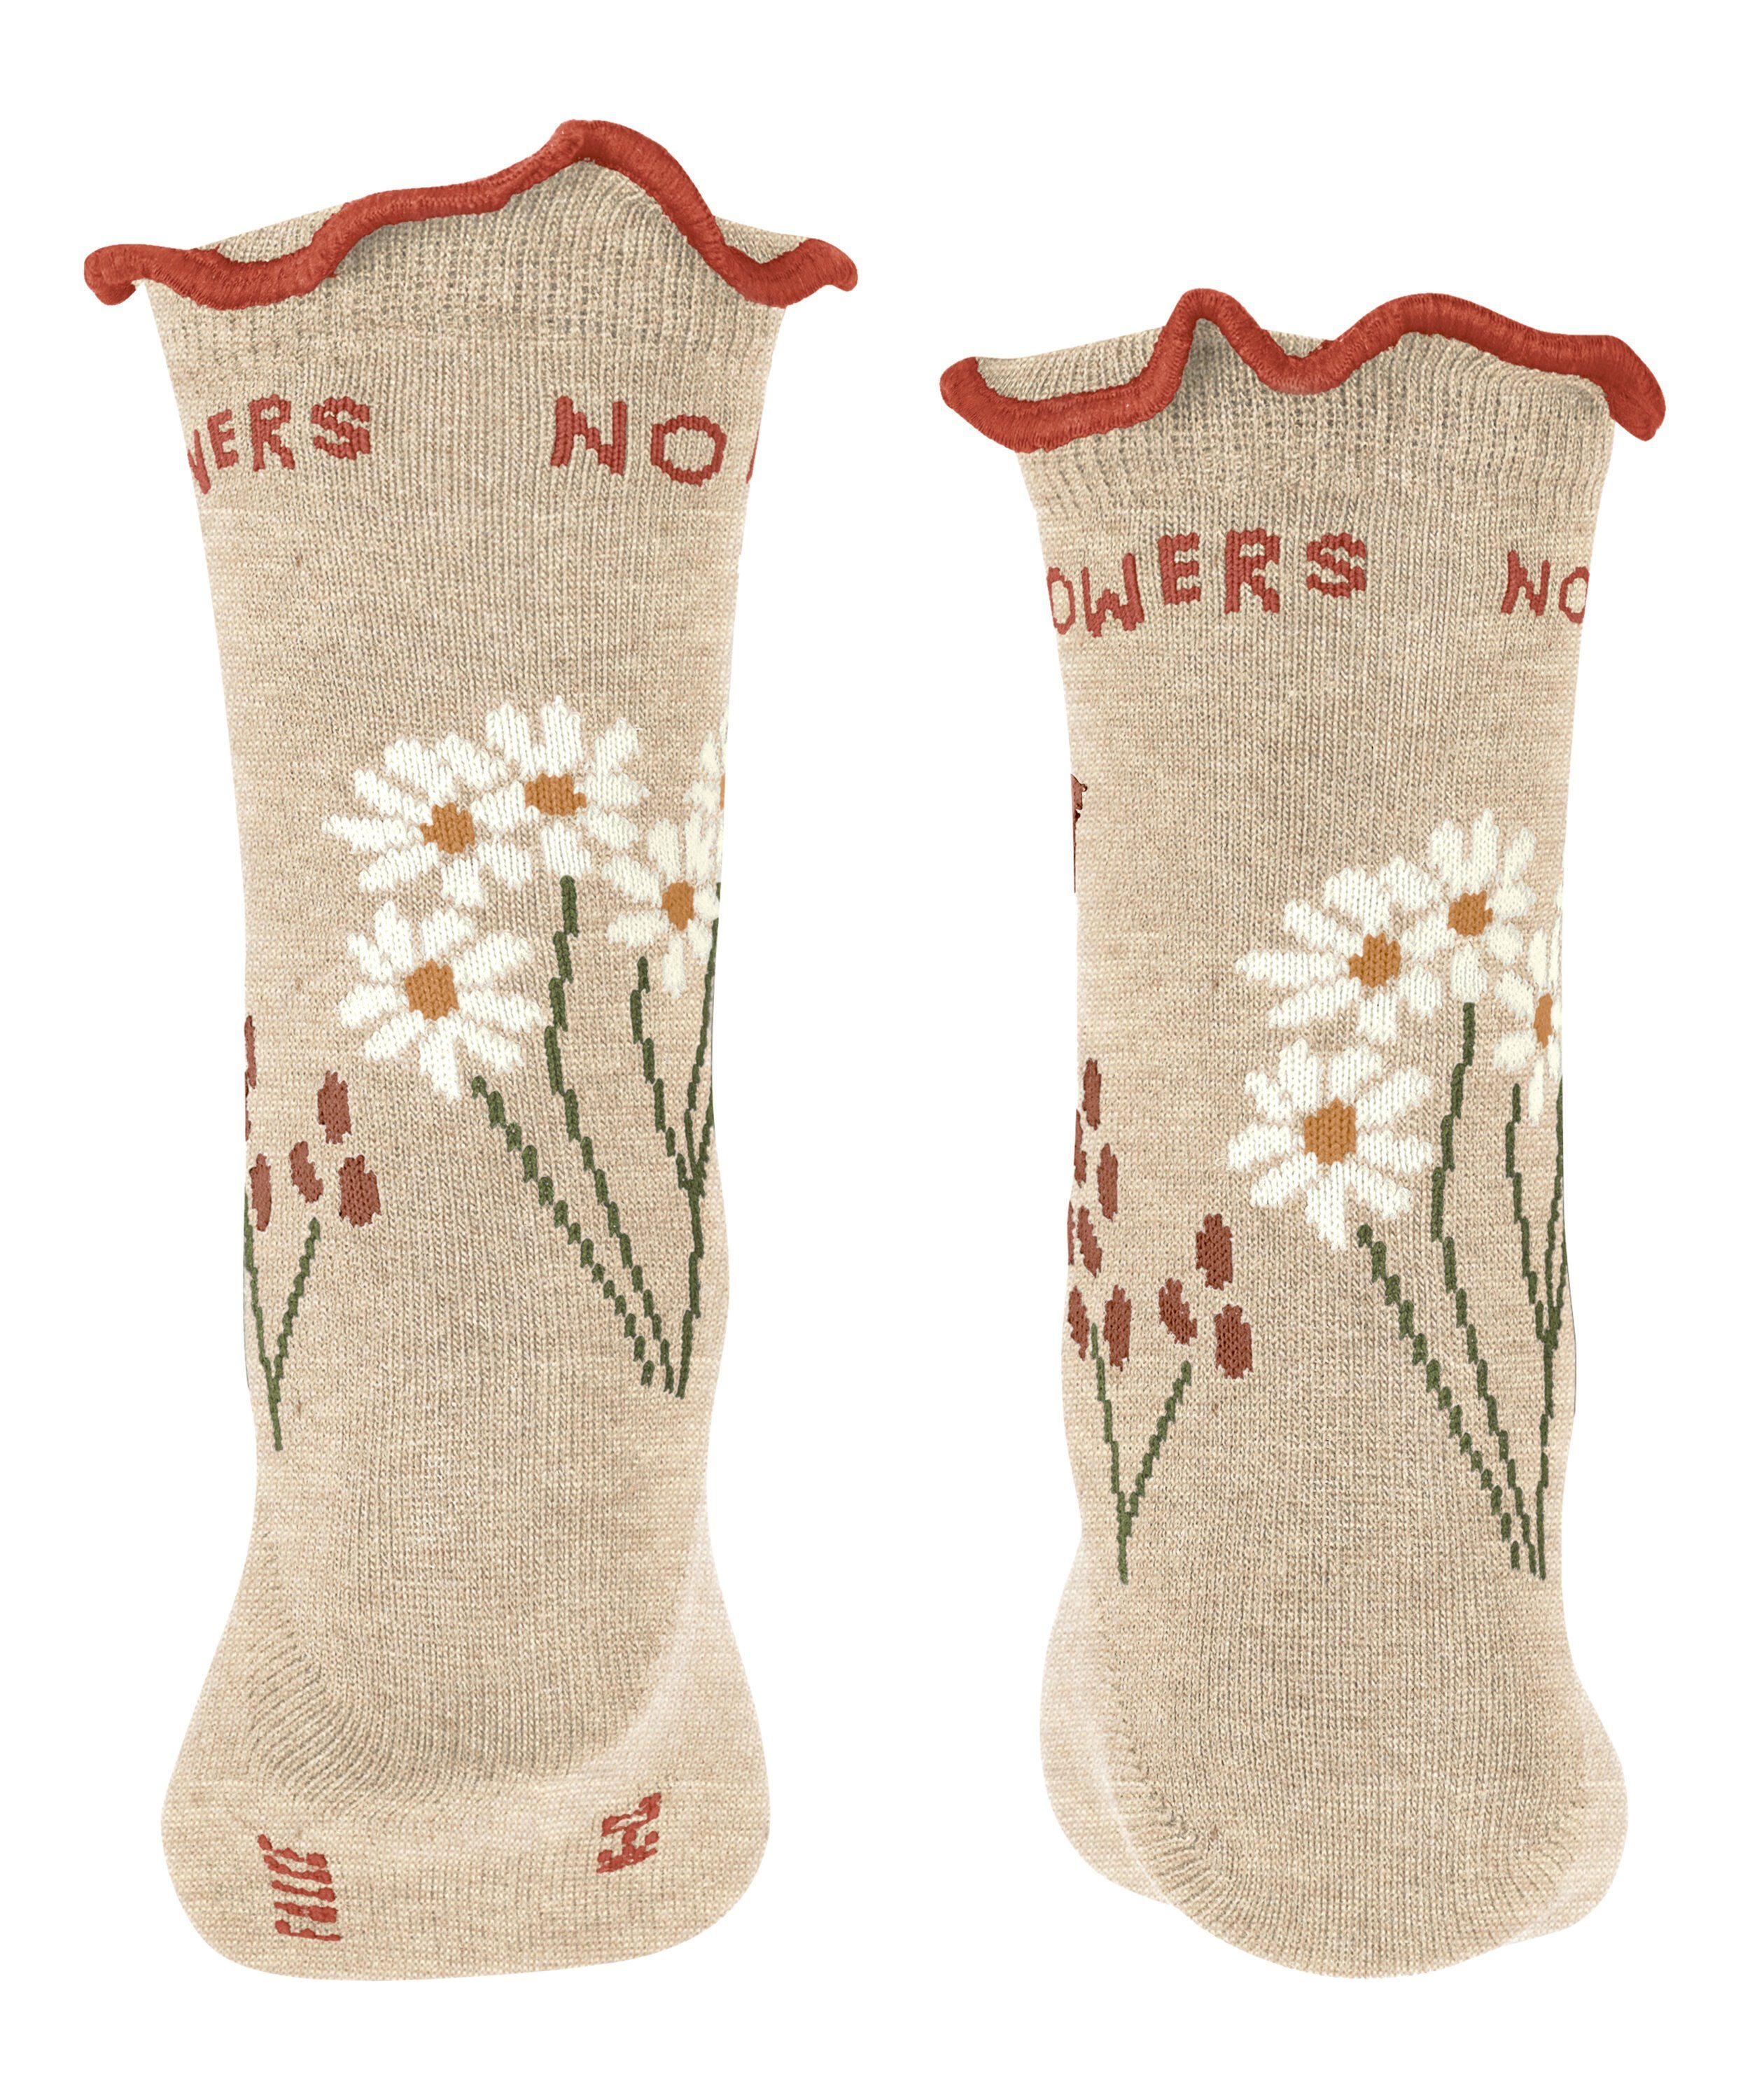 (4650) mel. Socken sand Flowers (1-Paar) No Rain No FALKE